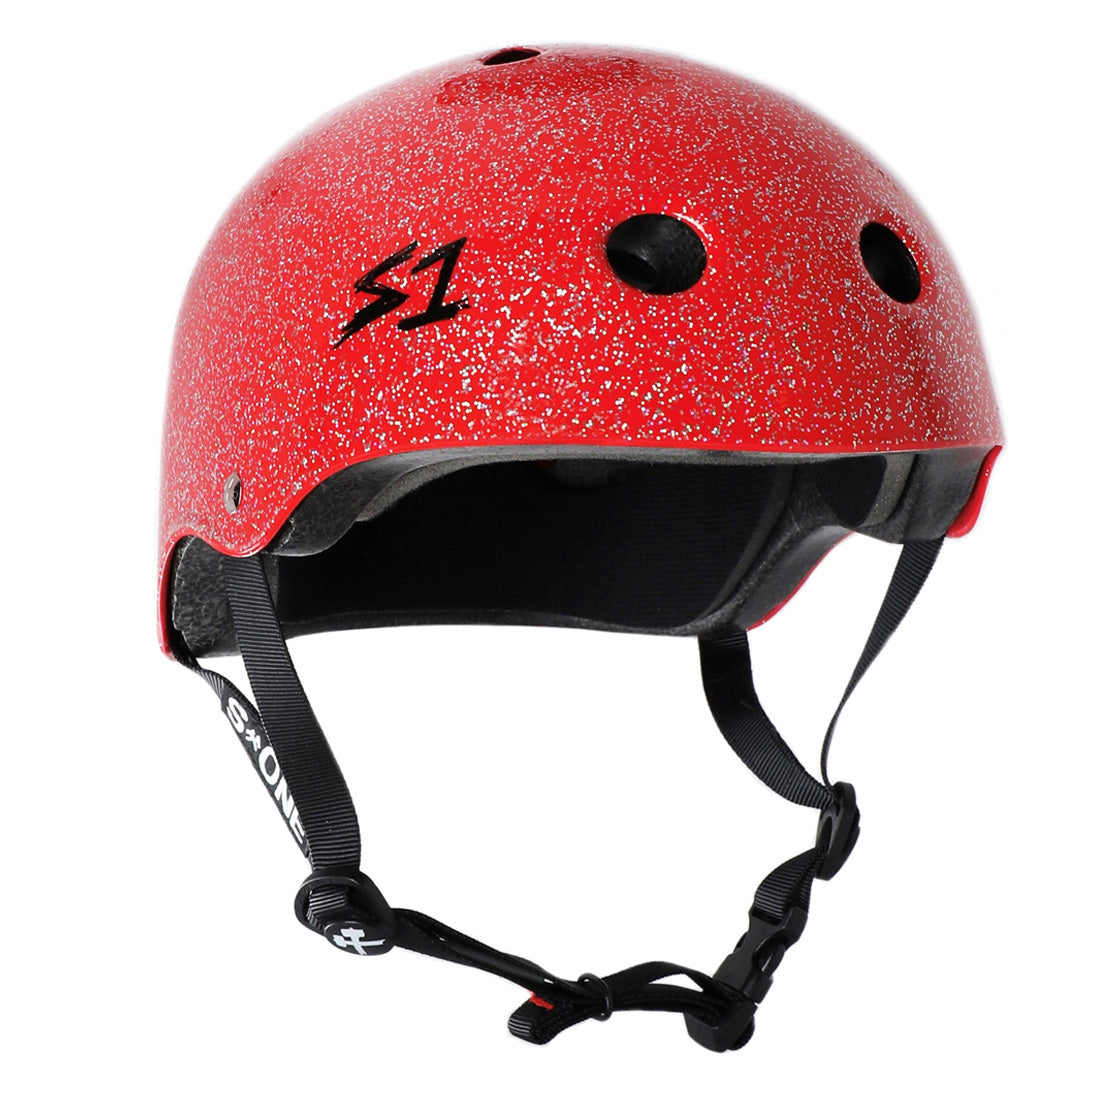 S-One Lifer Helmet - Red Glitter Helmets